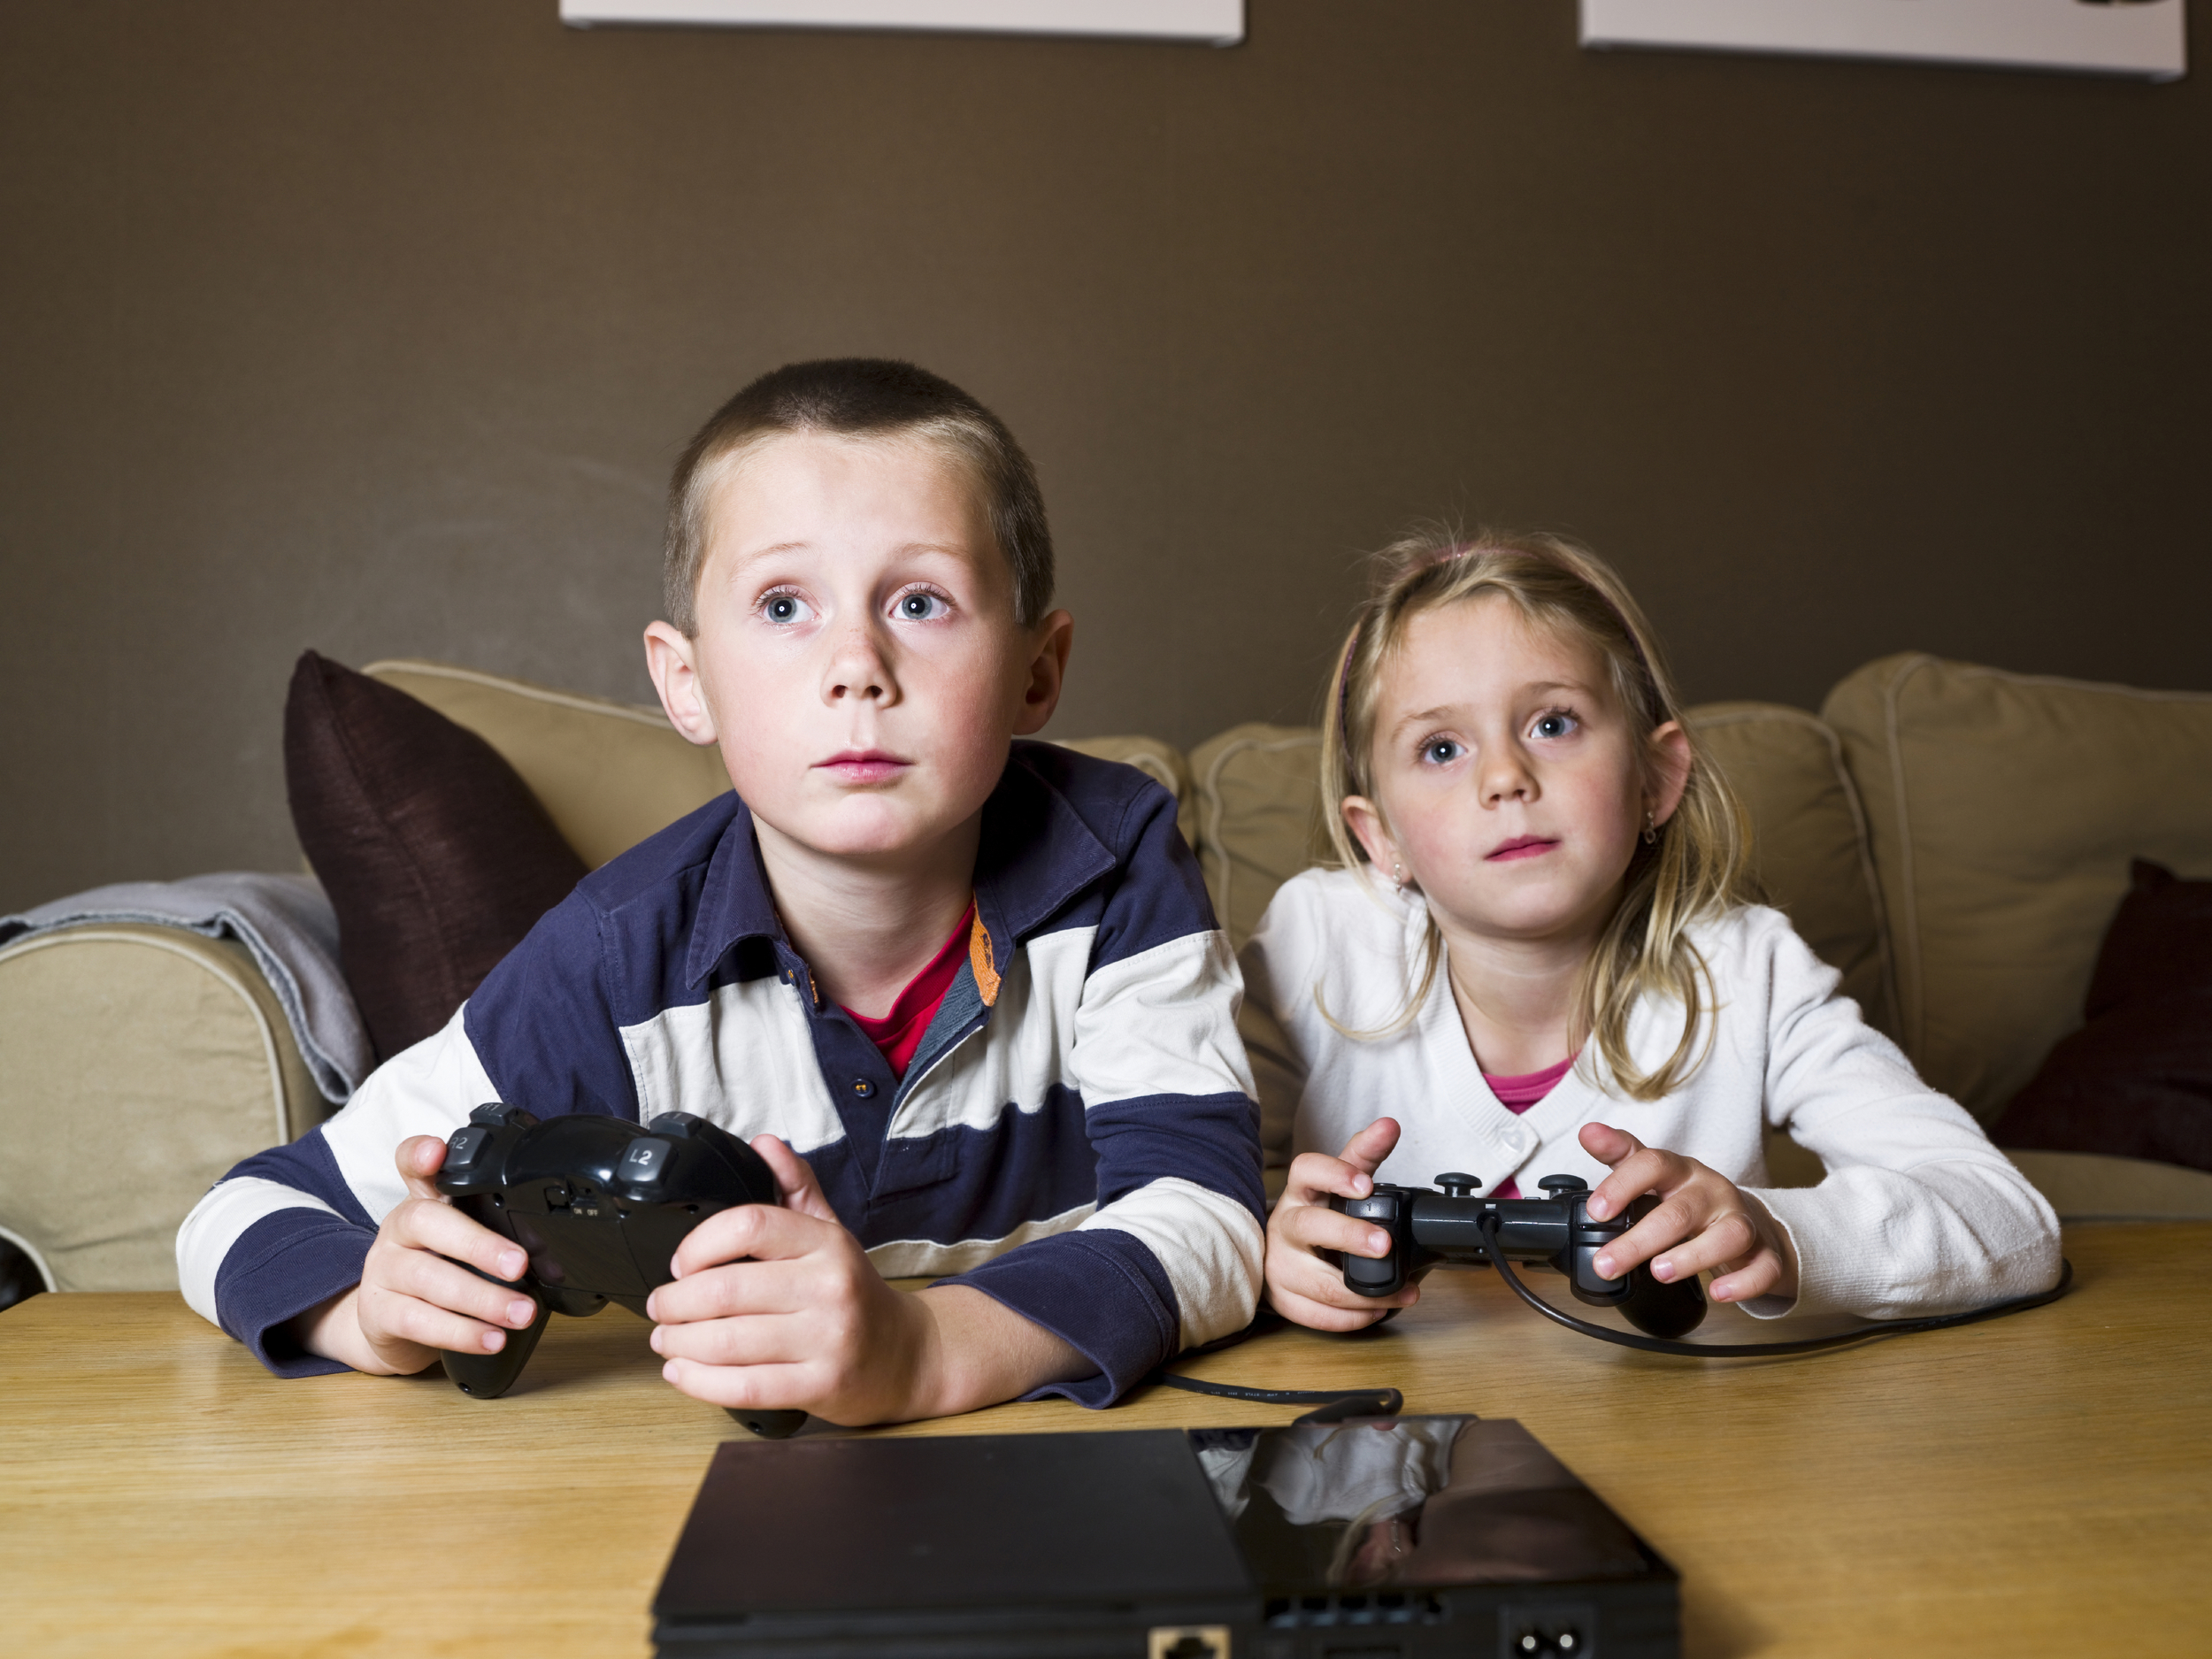 He to start playing. Юный геймер. Видеоигры для детей. Дети играющие в приставку. Ребенок играет в компьютерные игры.